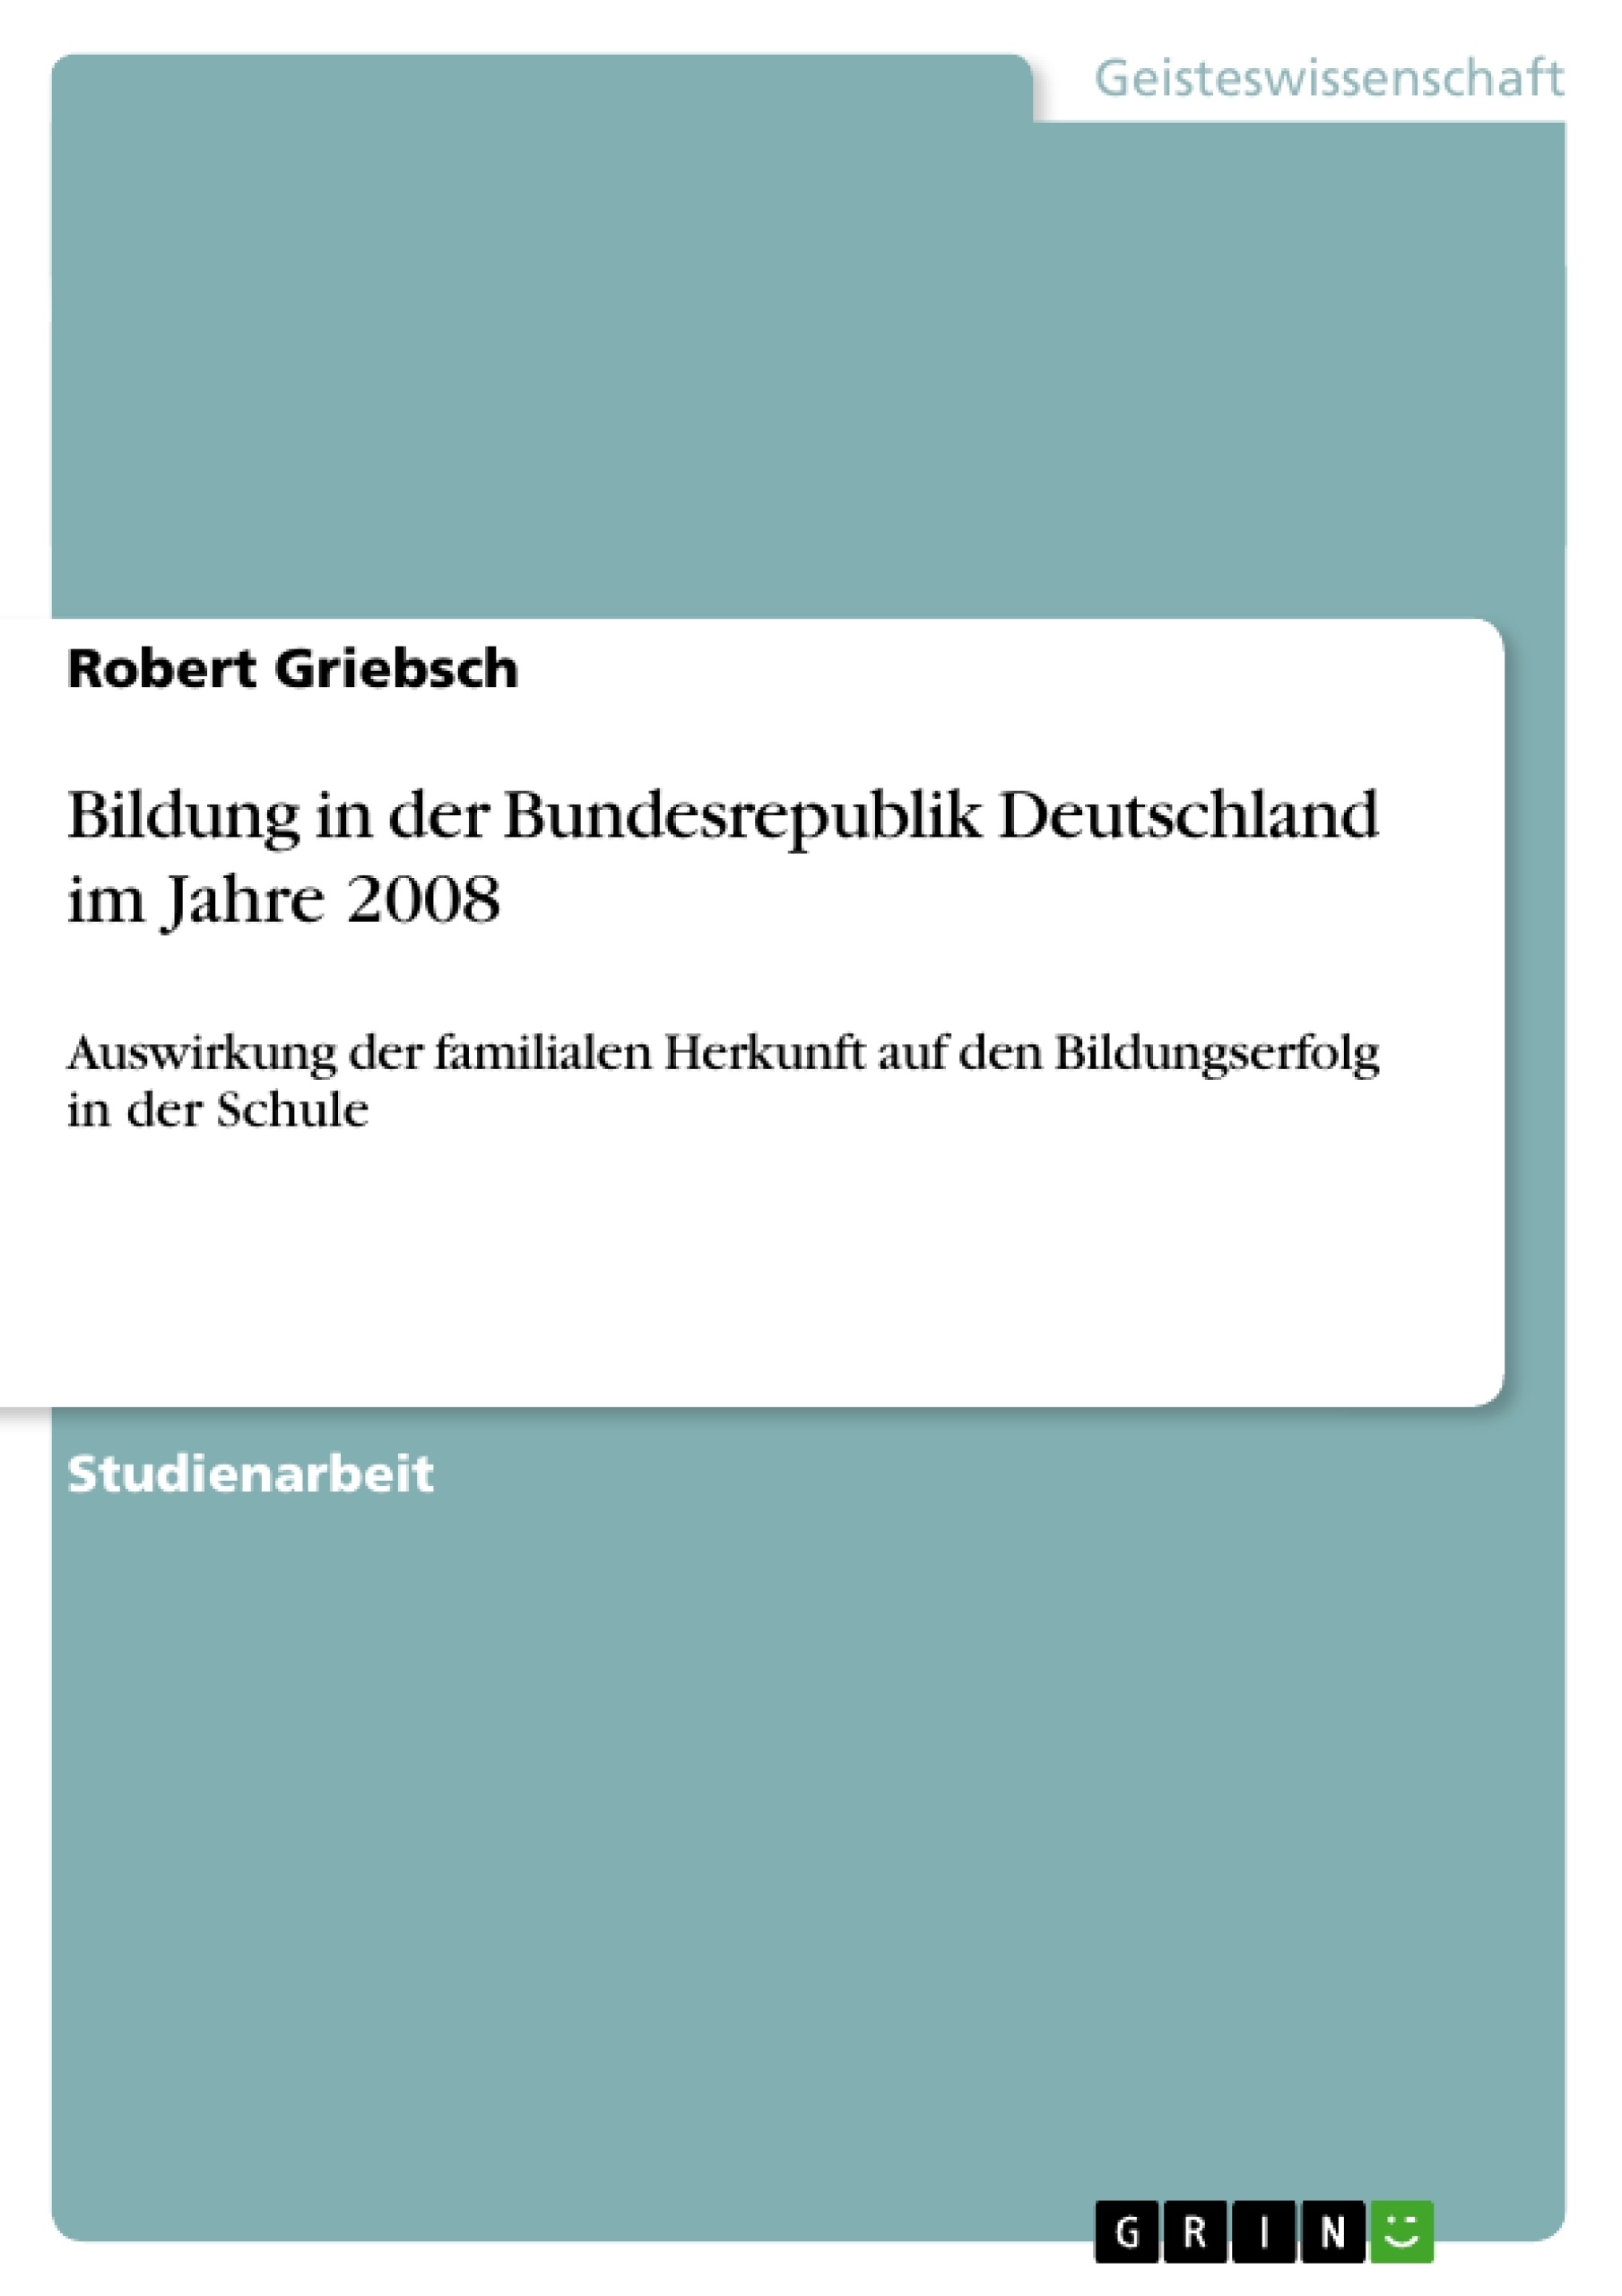 Título: Bildung in der Bundesrepublik Deutschland im Jahre 2008